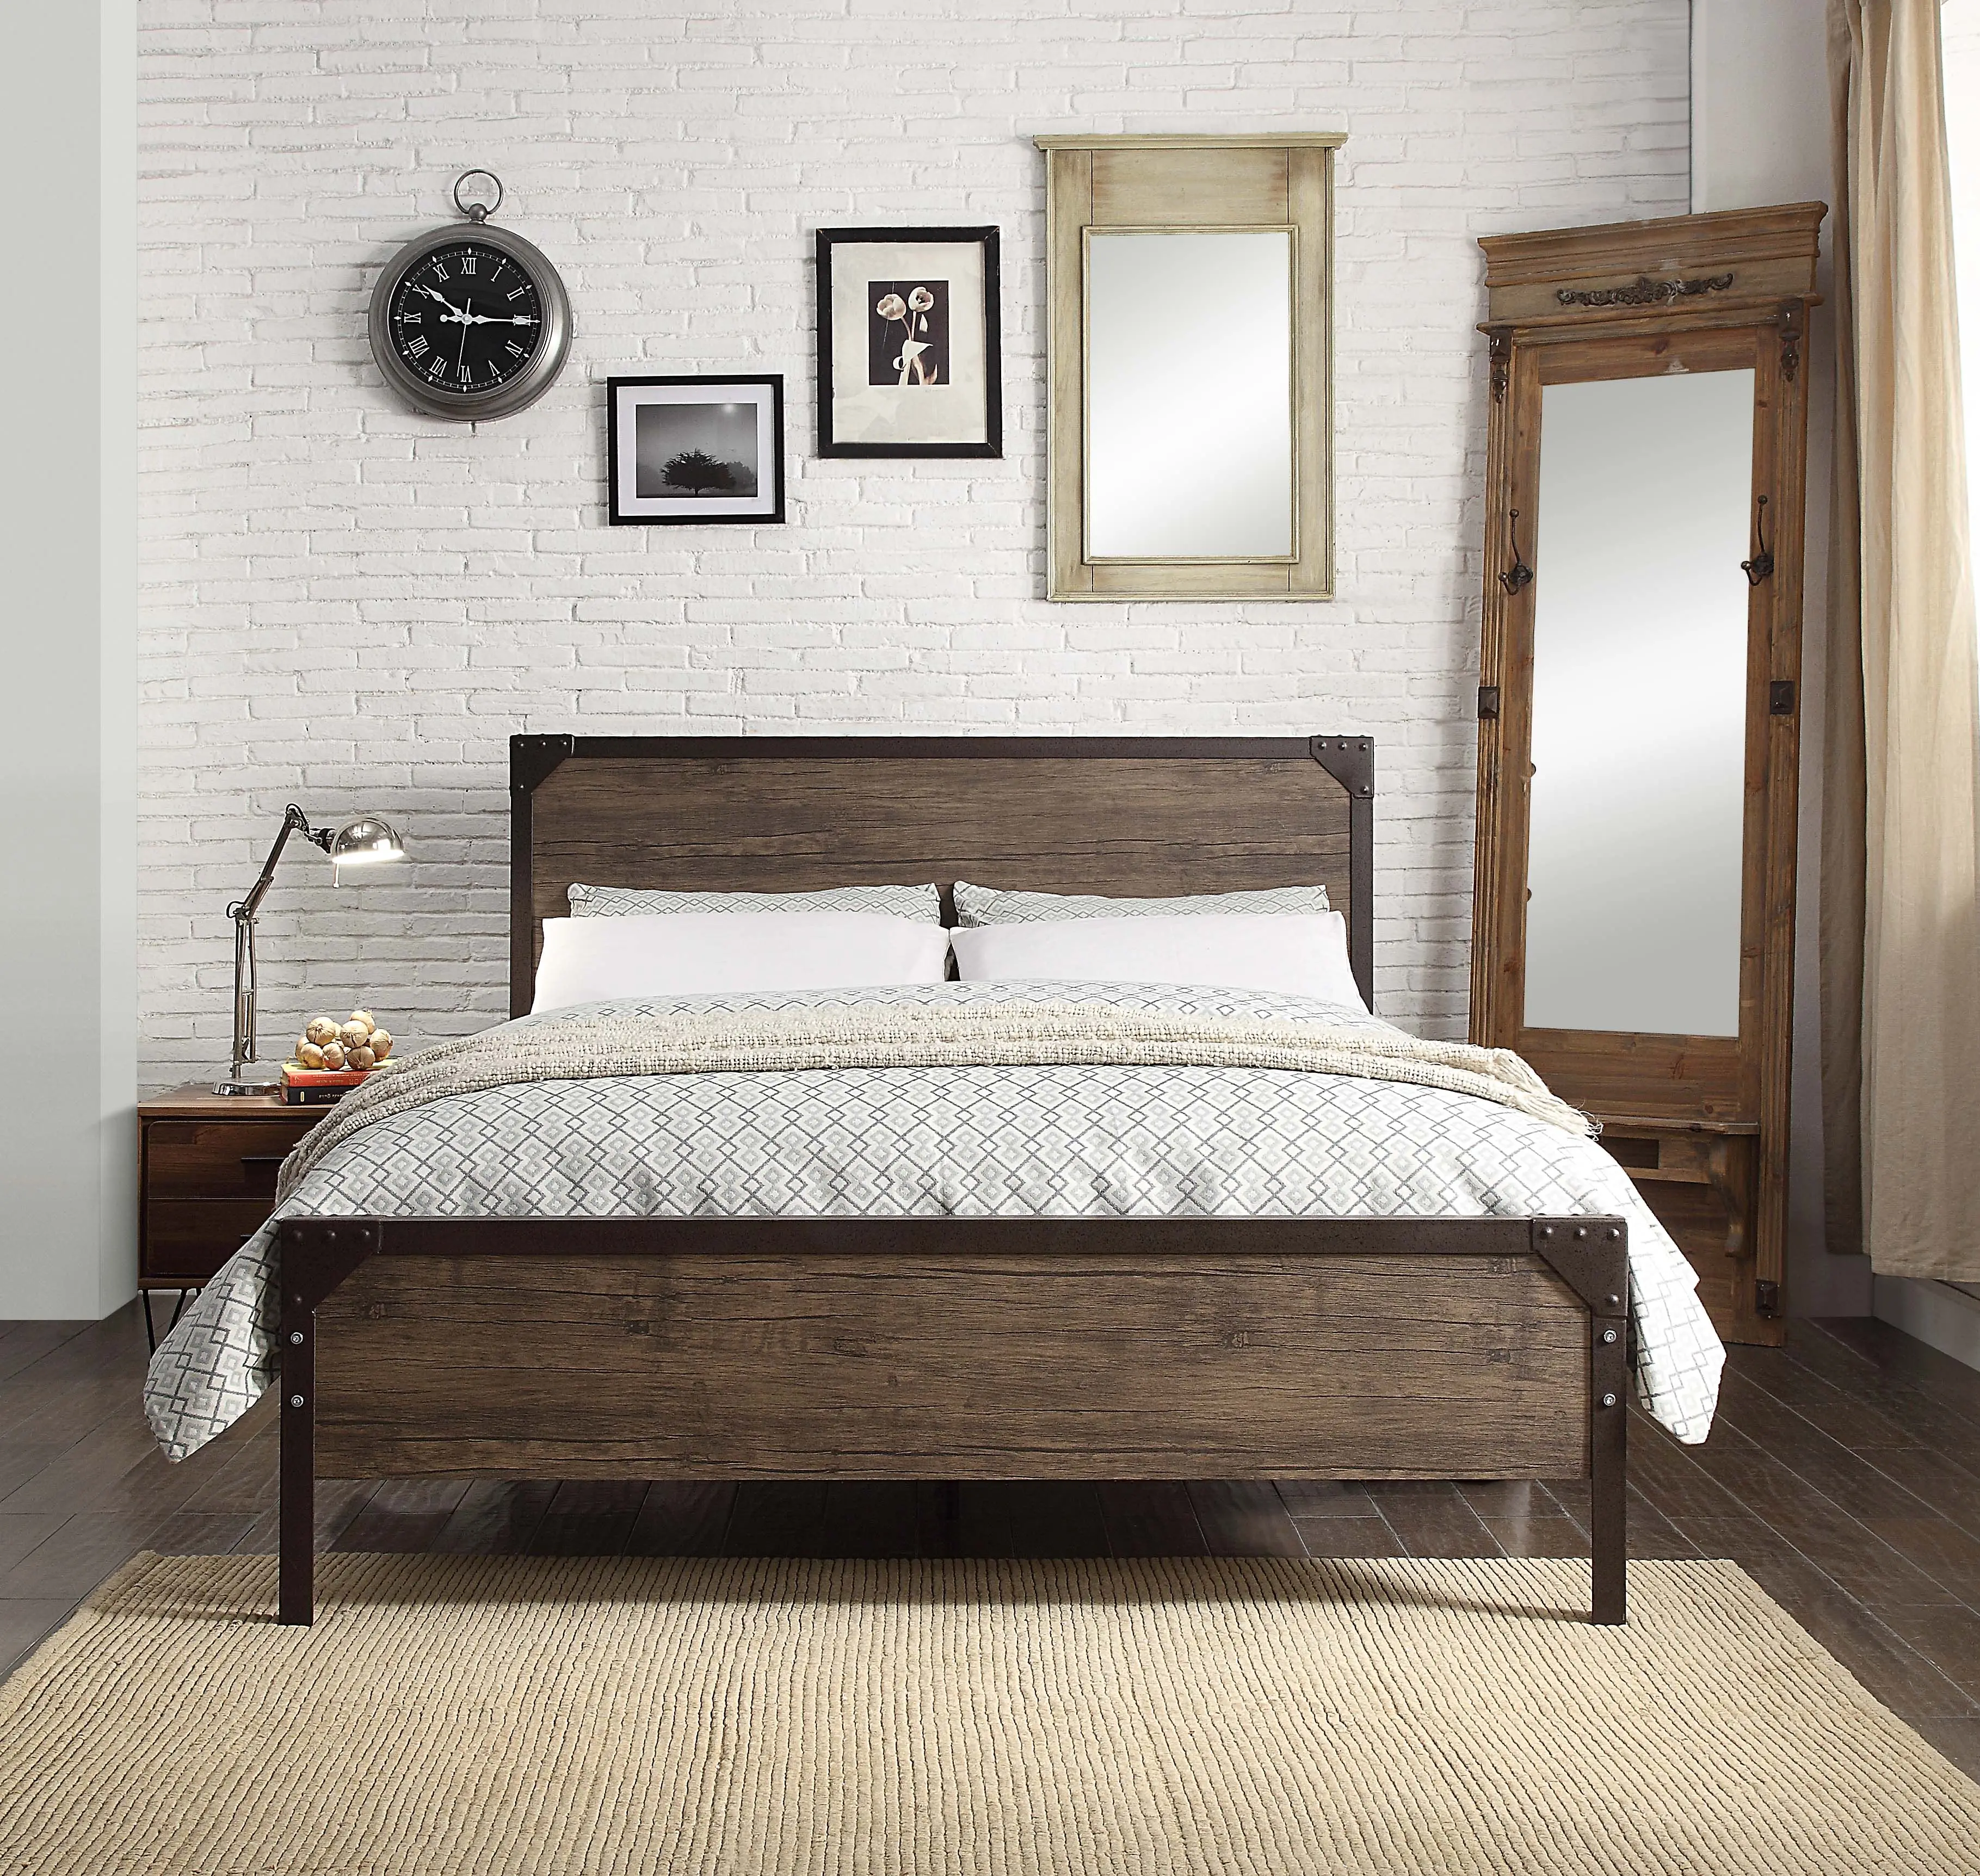 الصناعية الصدئة زاوية الحديد سرير معدني تصميم مع يمول المجلس الخشب إطار معدني السرير العتيقة الحديد الزهر